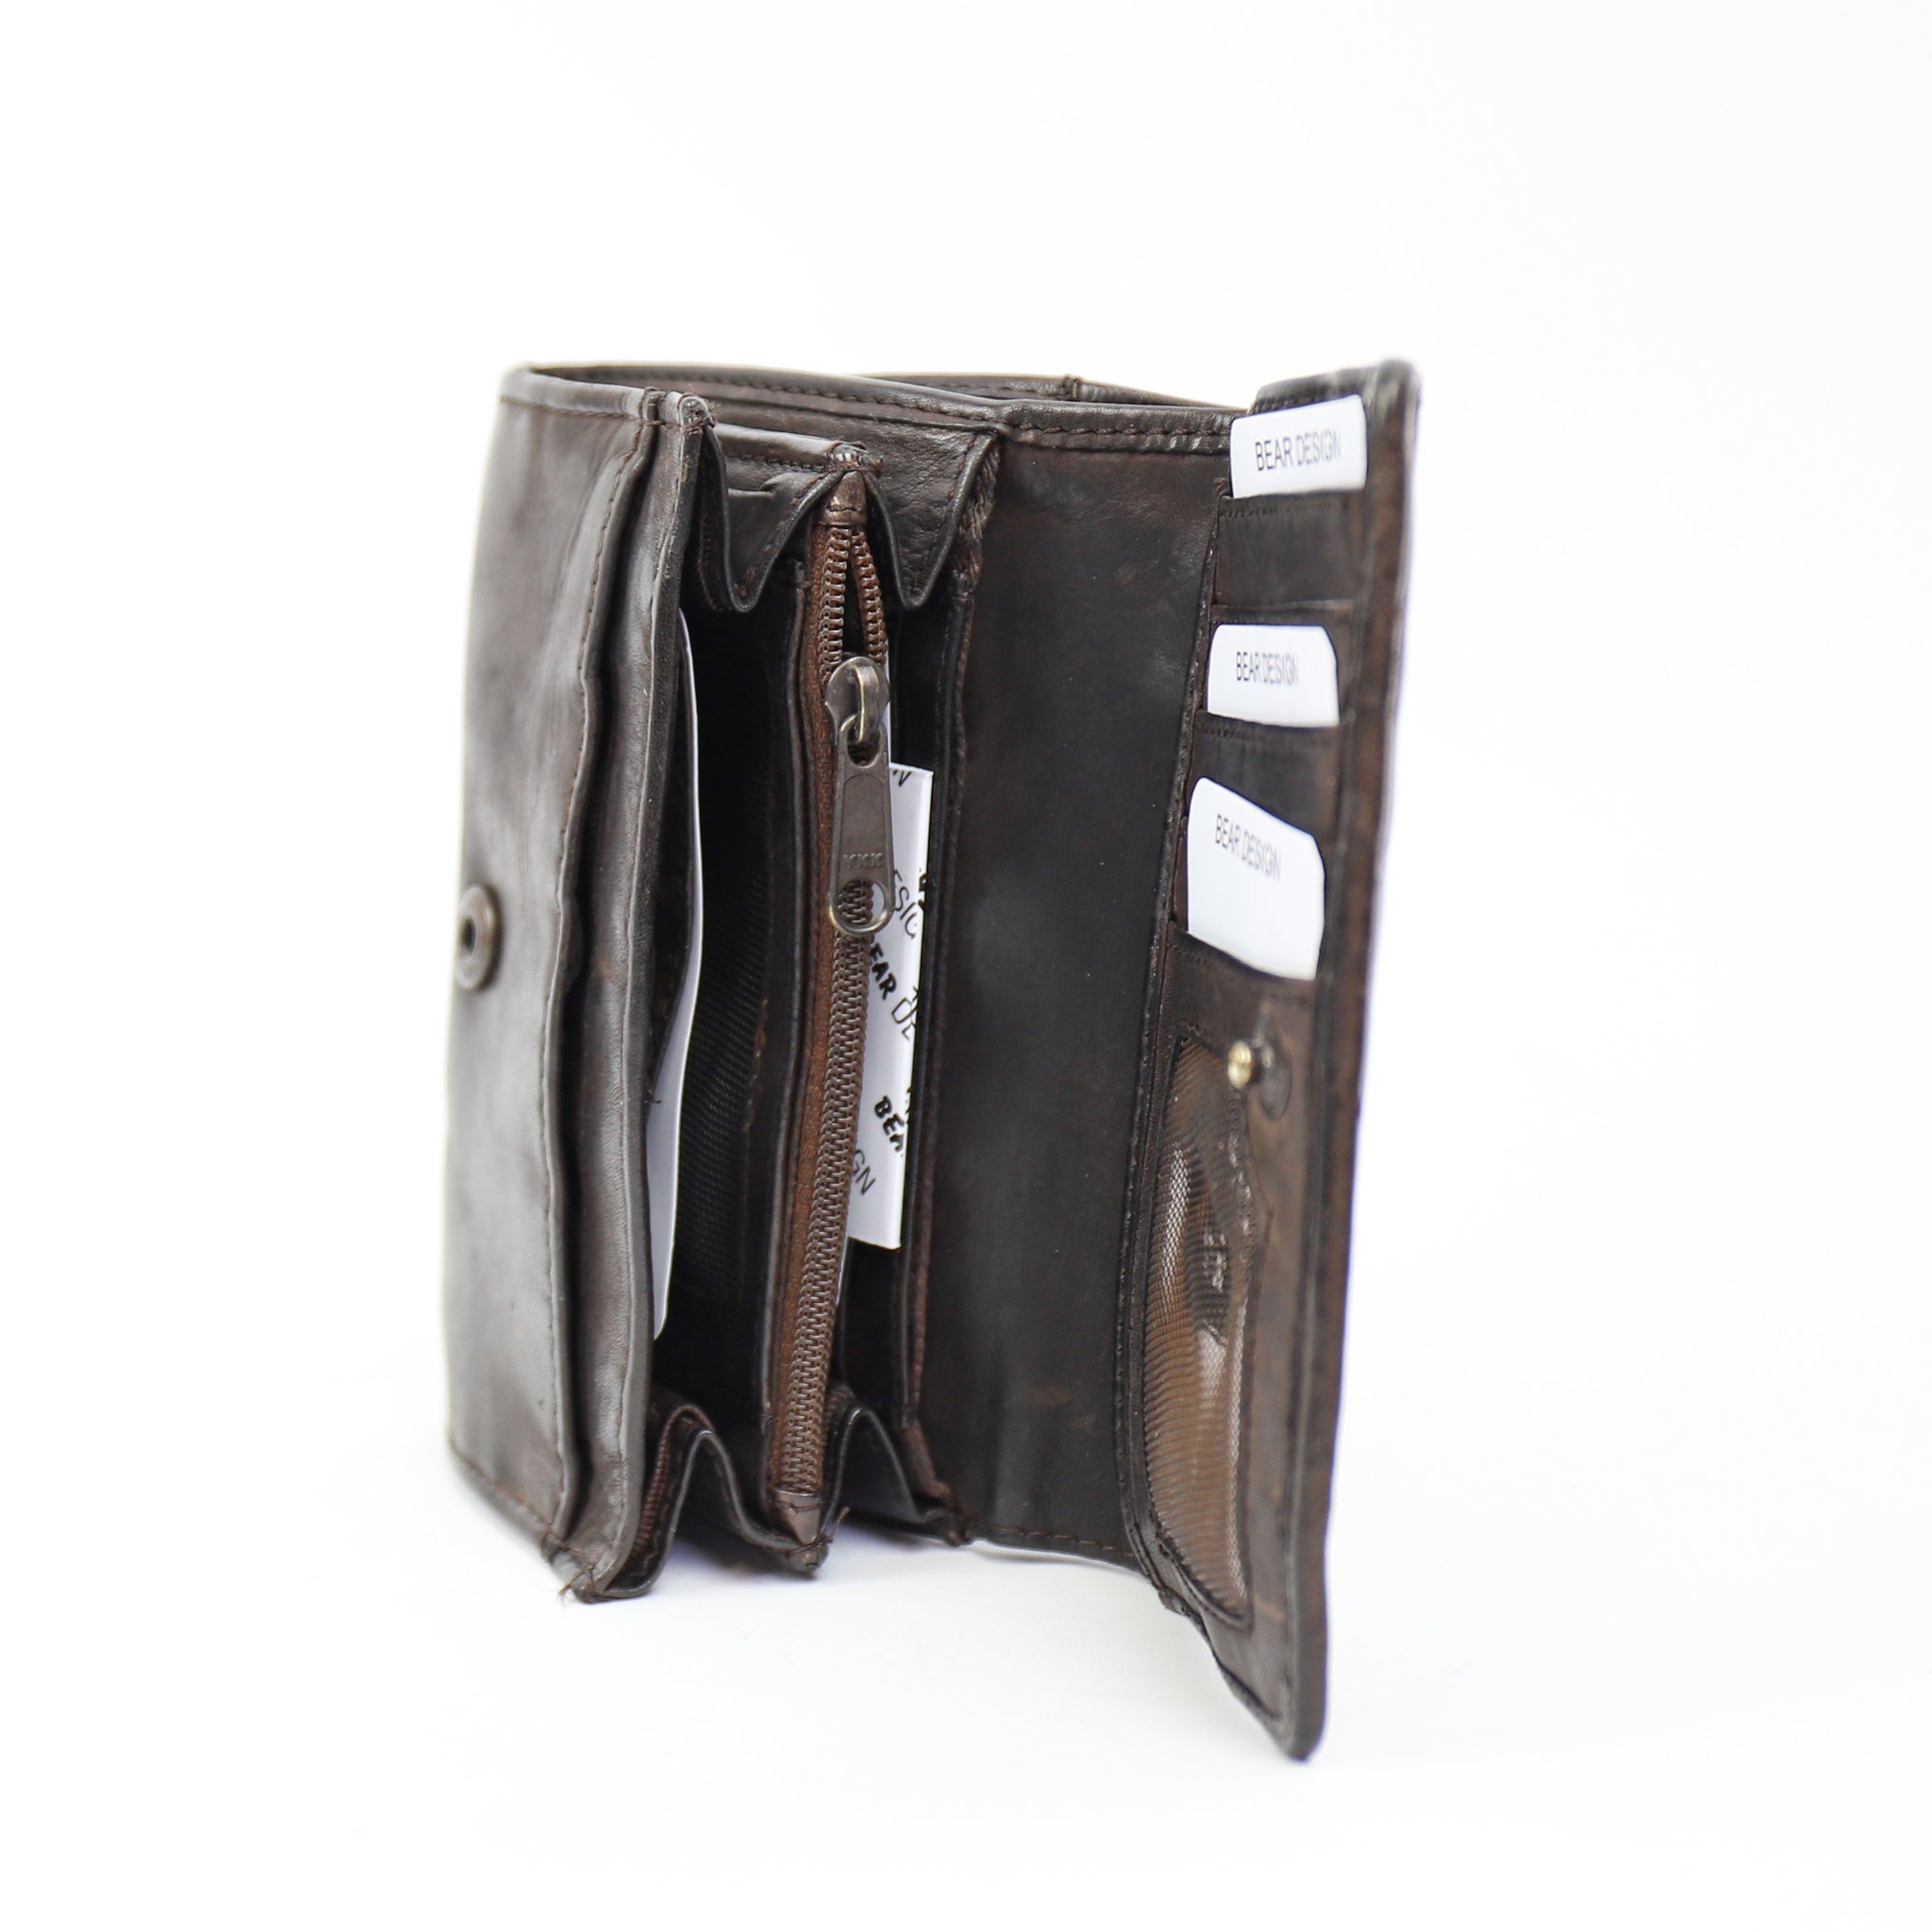 Wrap wallet 'Flappie' dark brown - CL 15572